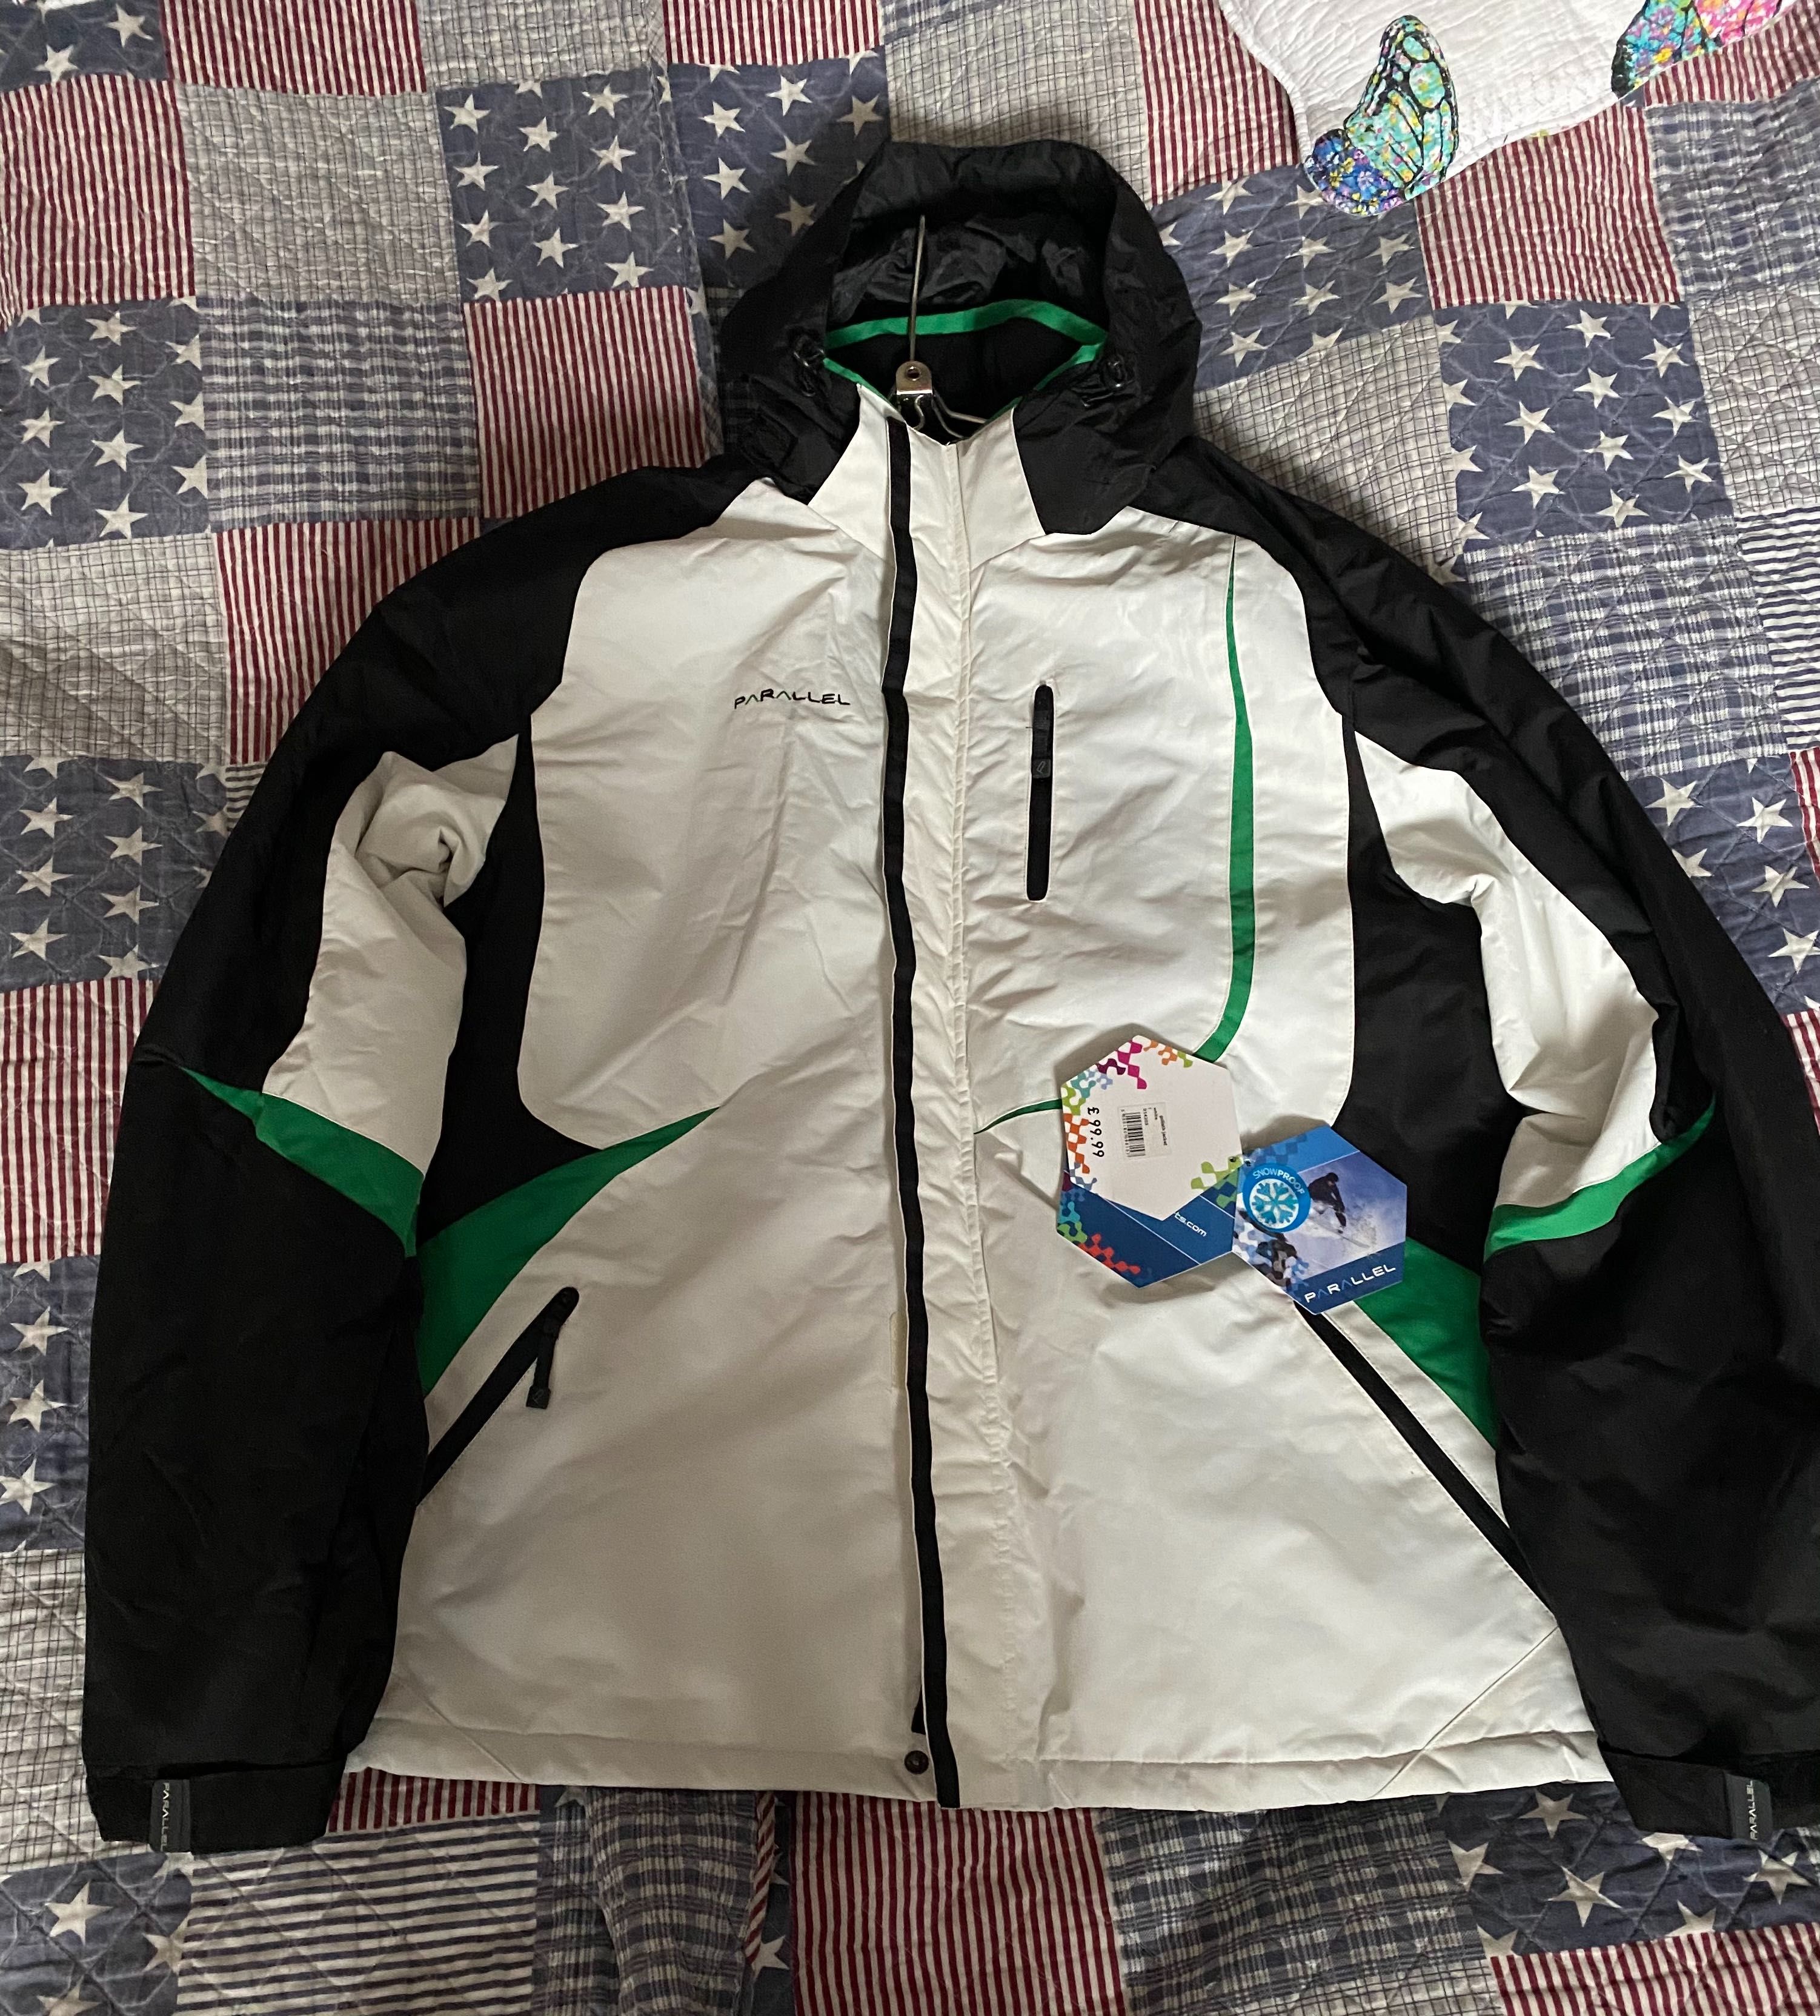 Parallel мужская лыжная куртка размер L.